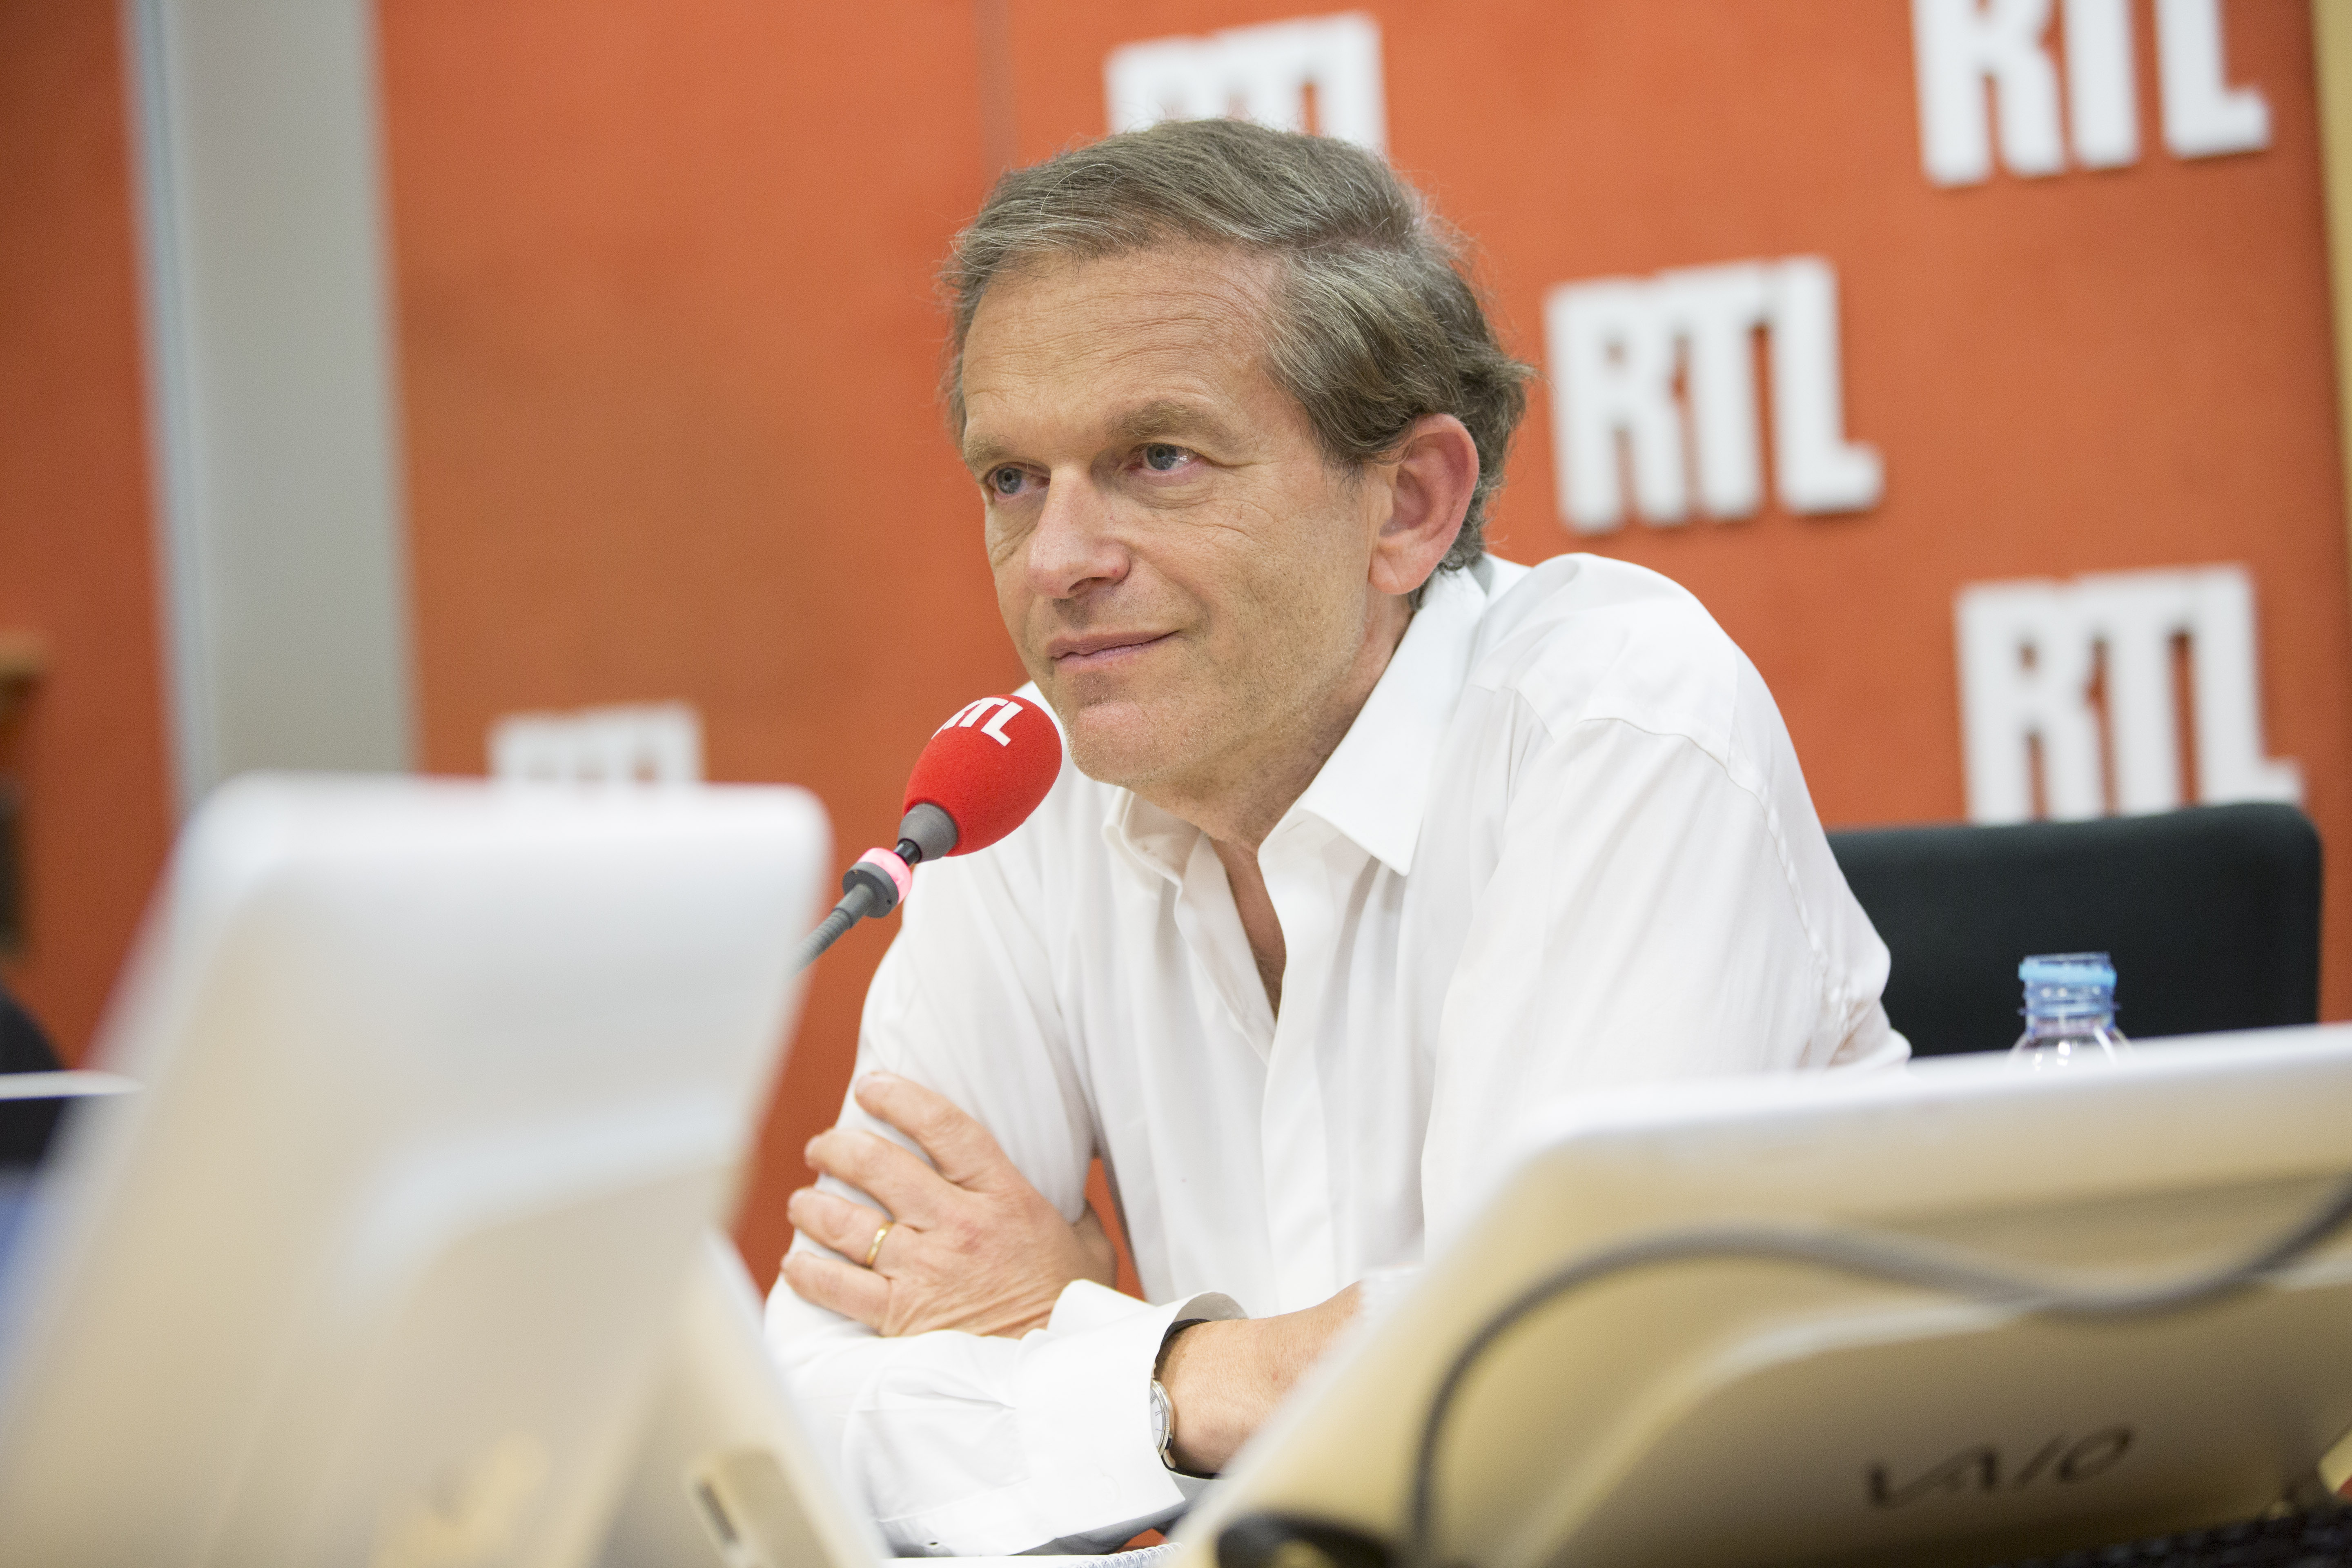 Pour être en forme cet été, RTL mise sur la chronique du Dr Frédéric Saldmann © Romain Boe / Abaca Press